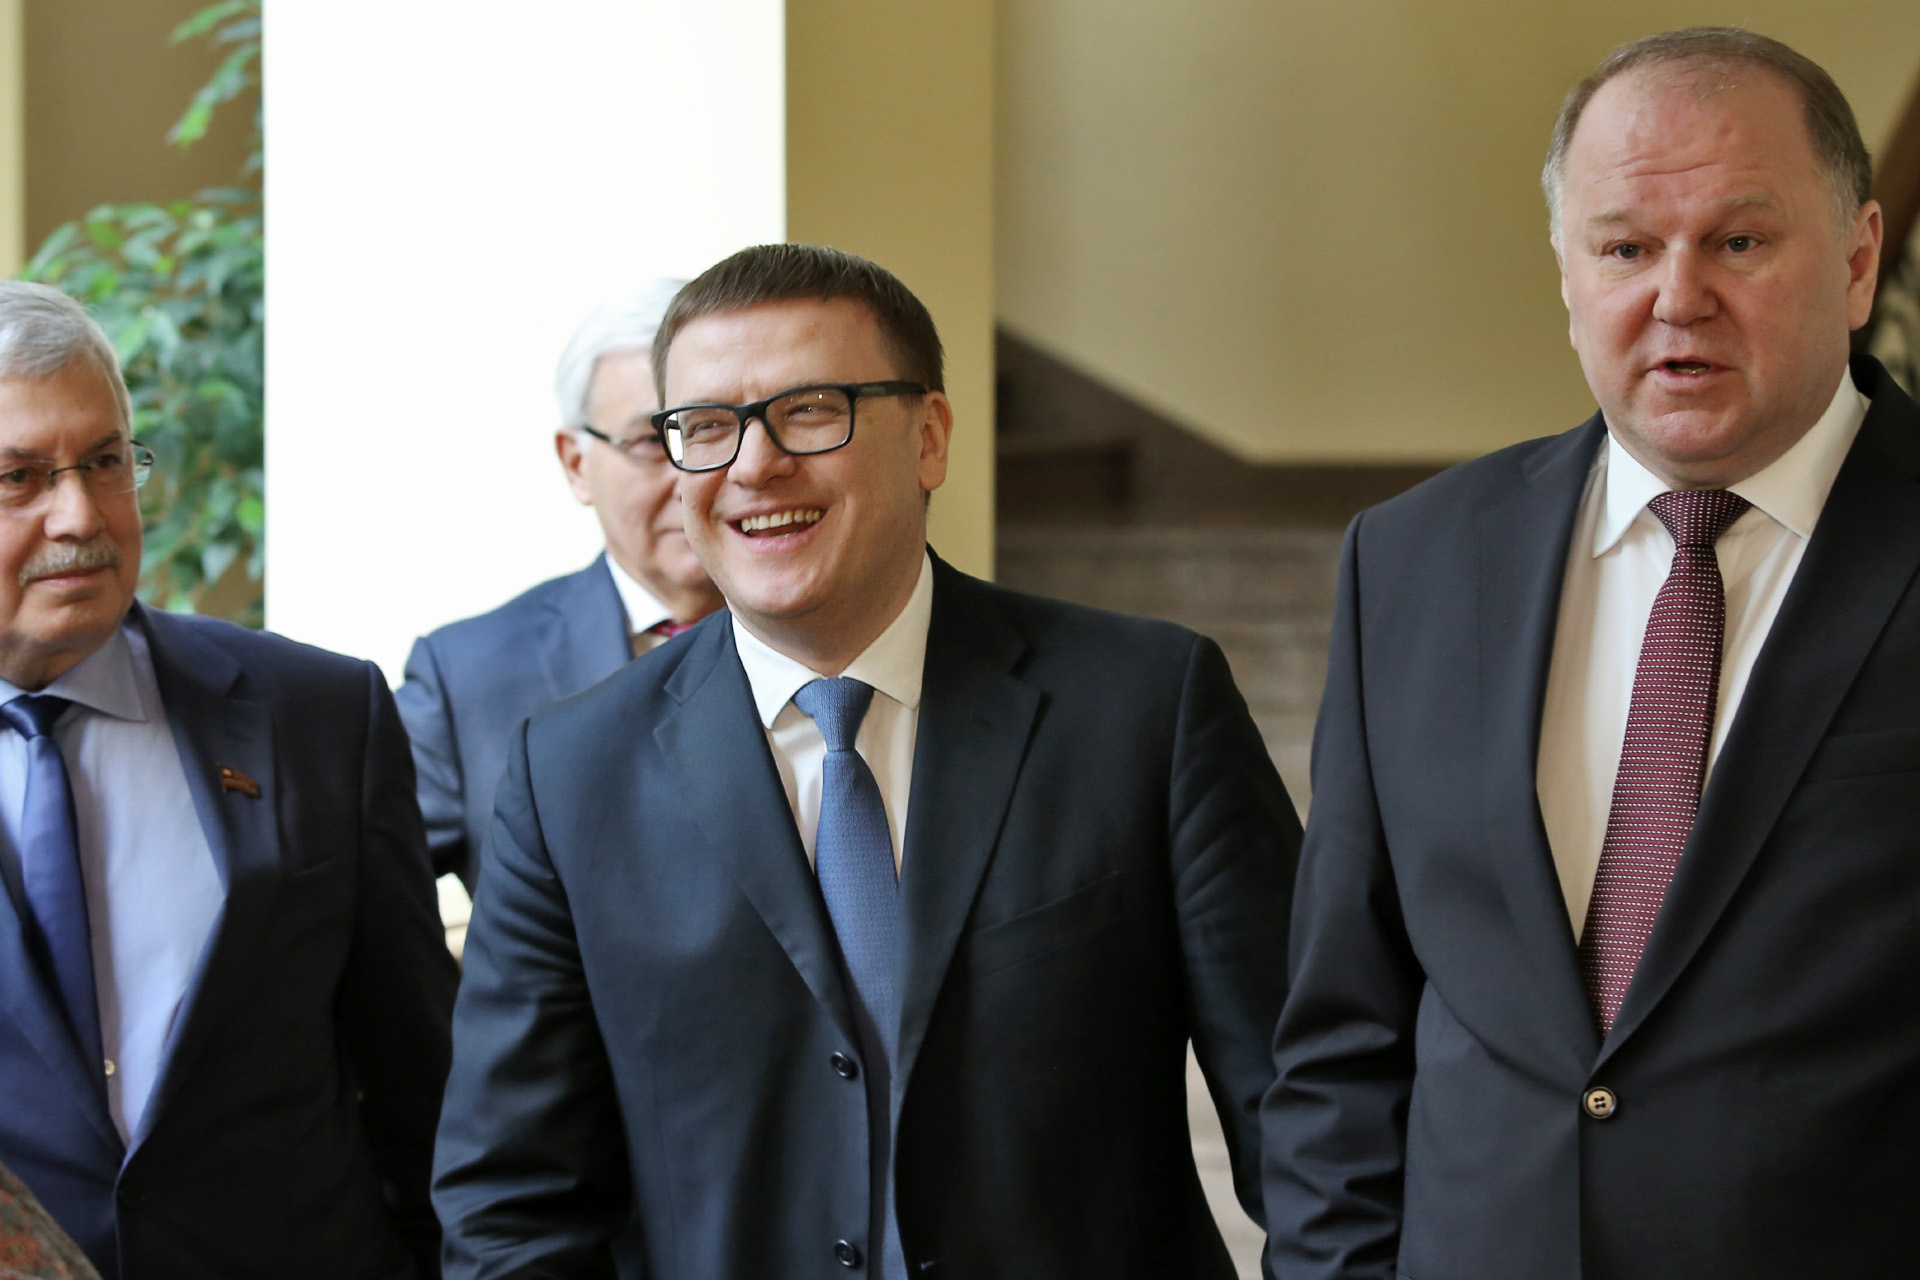 Цуканов и Текслер неформально пообщались в коридоре с председателем регионального Заксобрания Владимиром Мякушем и его замом Юрием Карликановым. Разговор явно был позитивным<br>